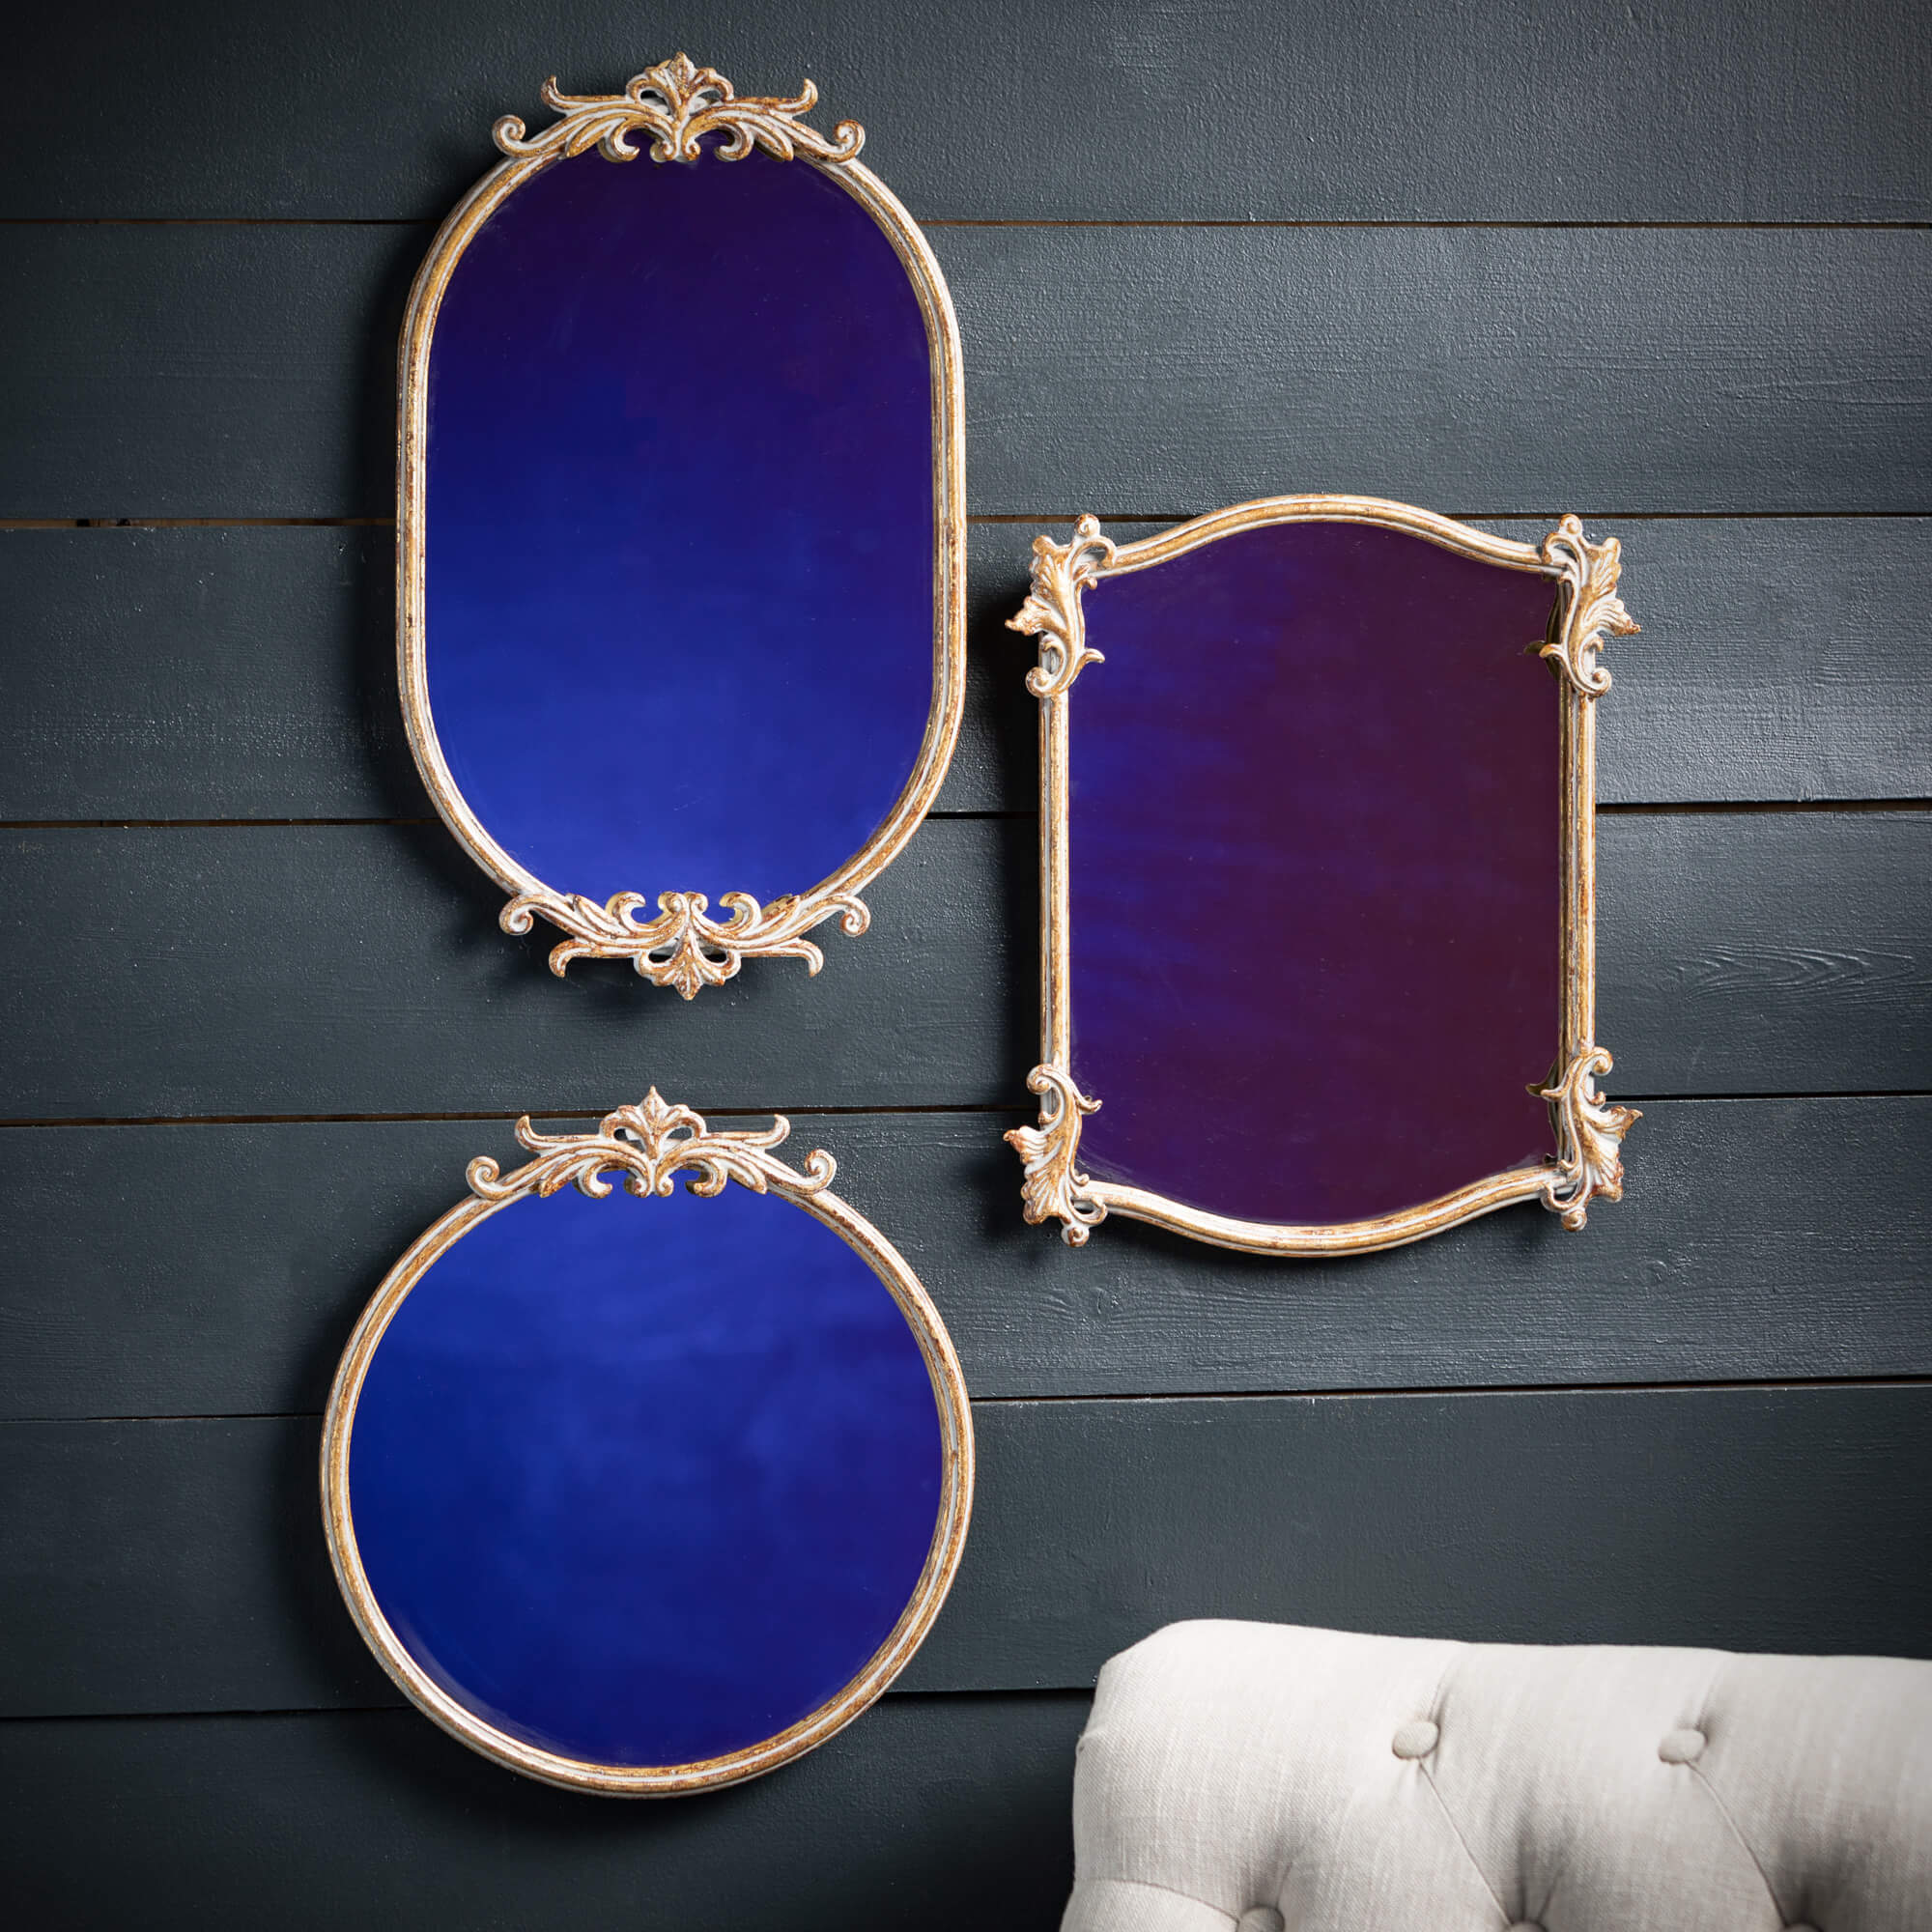 Heirloom Ornate Mirror, Style Options